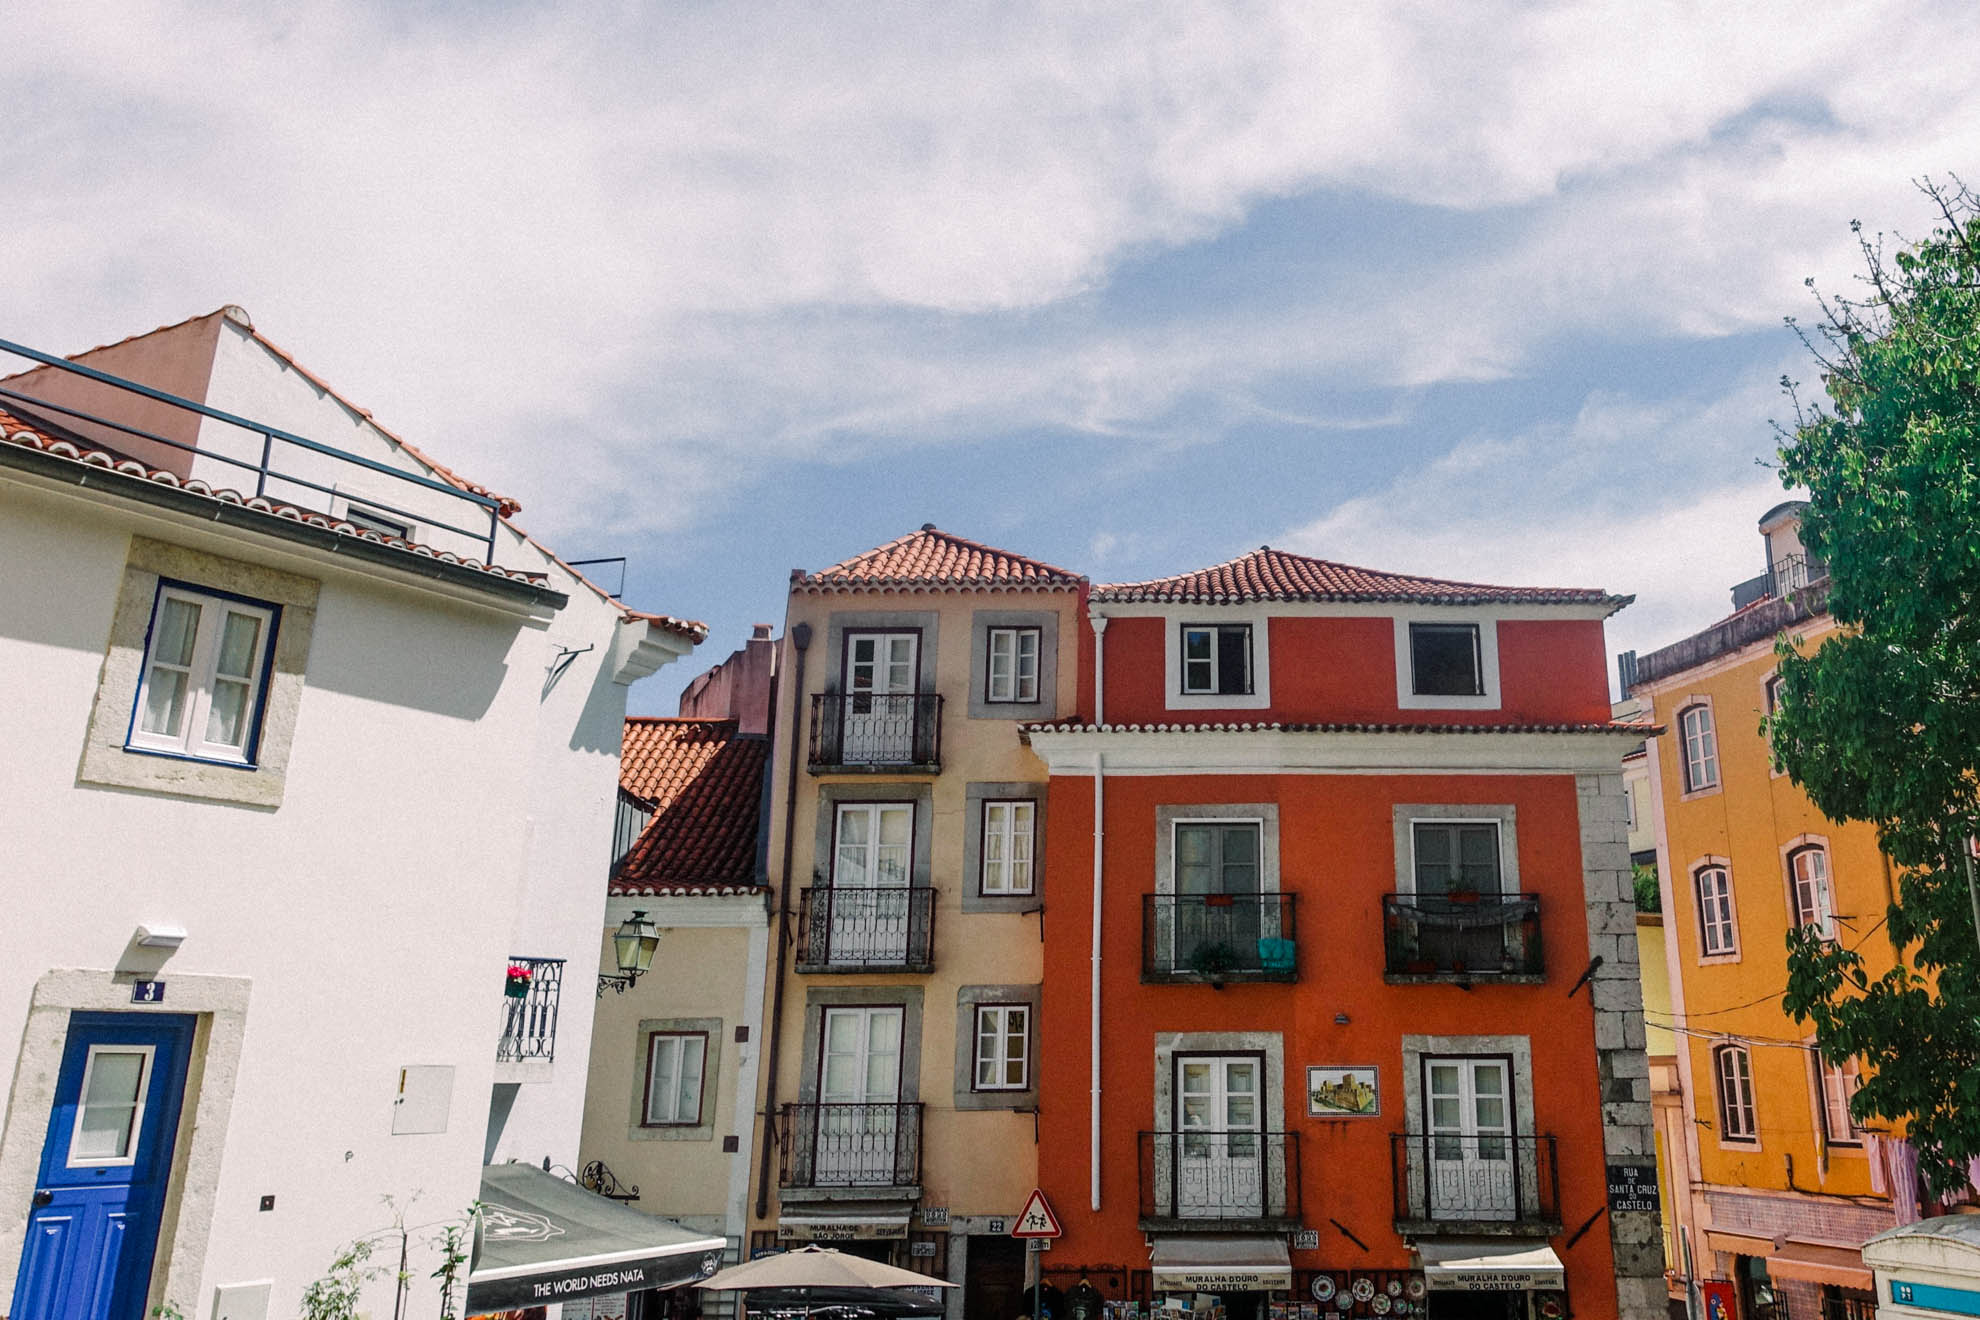 Why Lisbon is worth visting